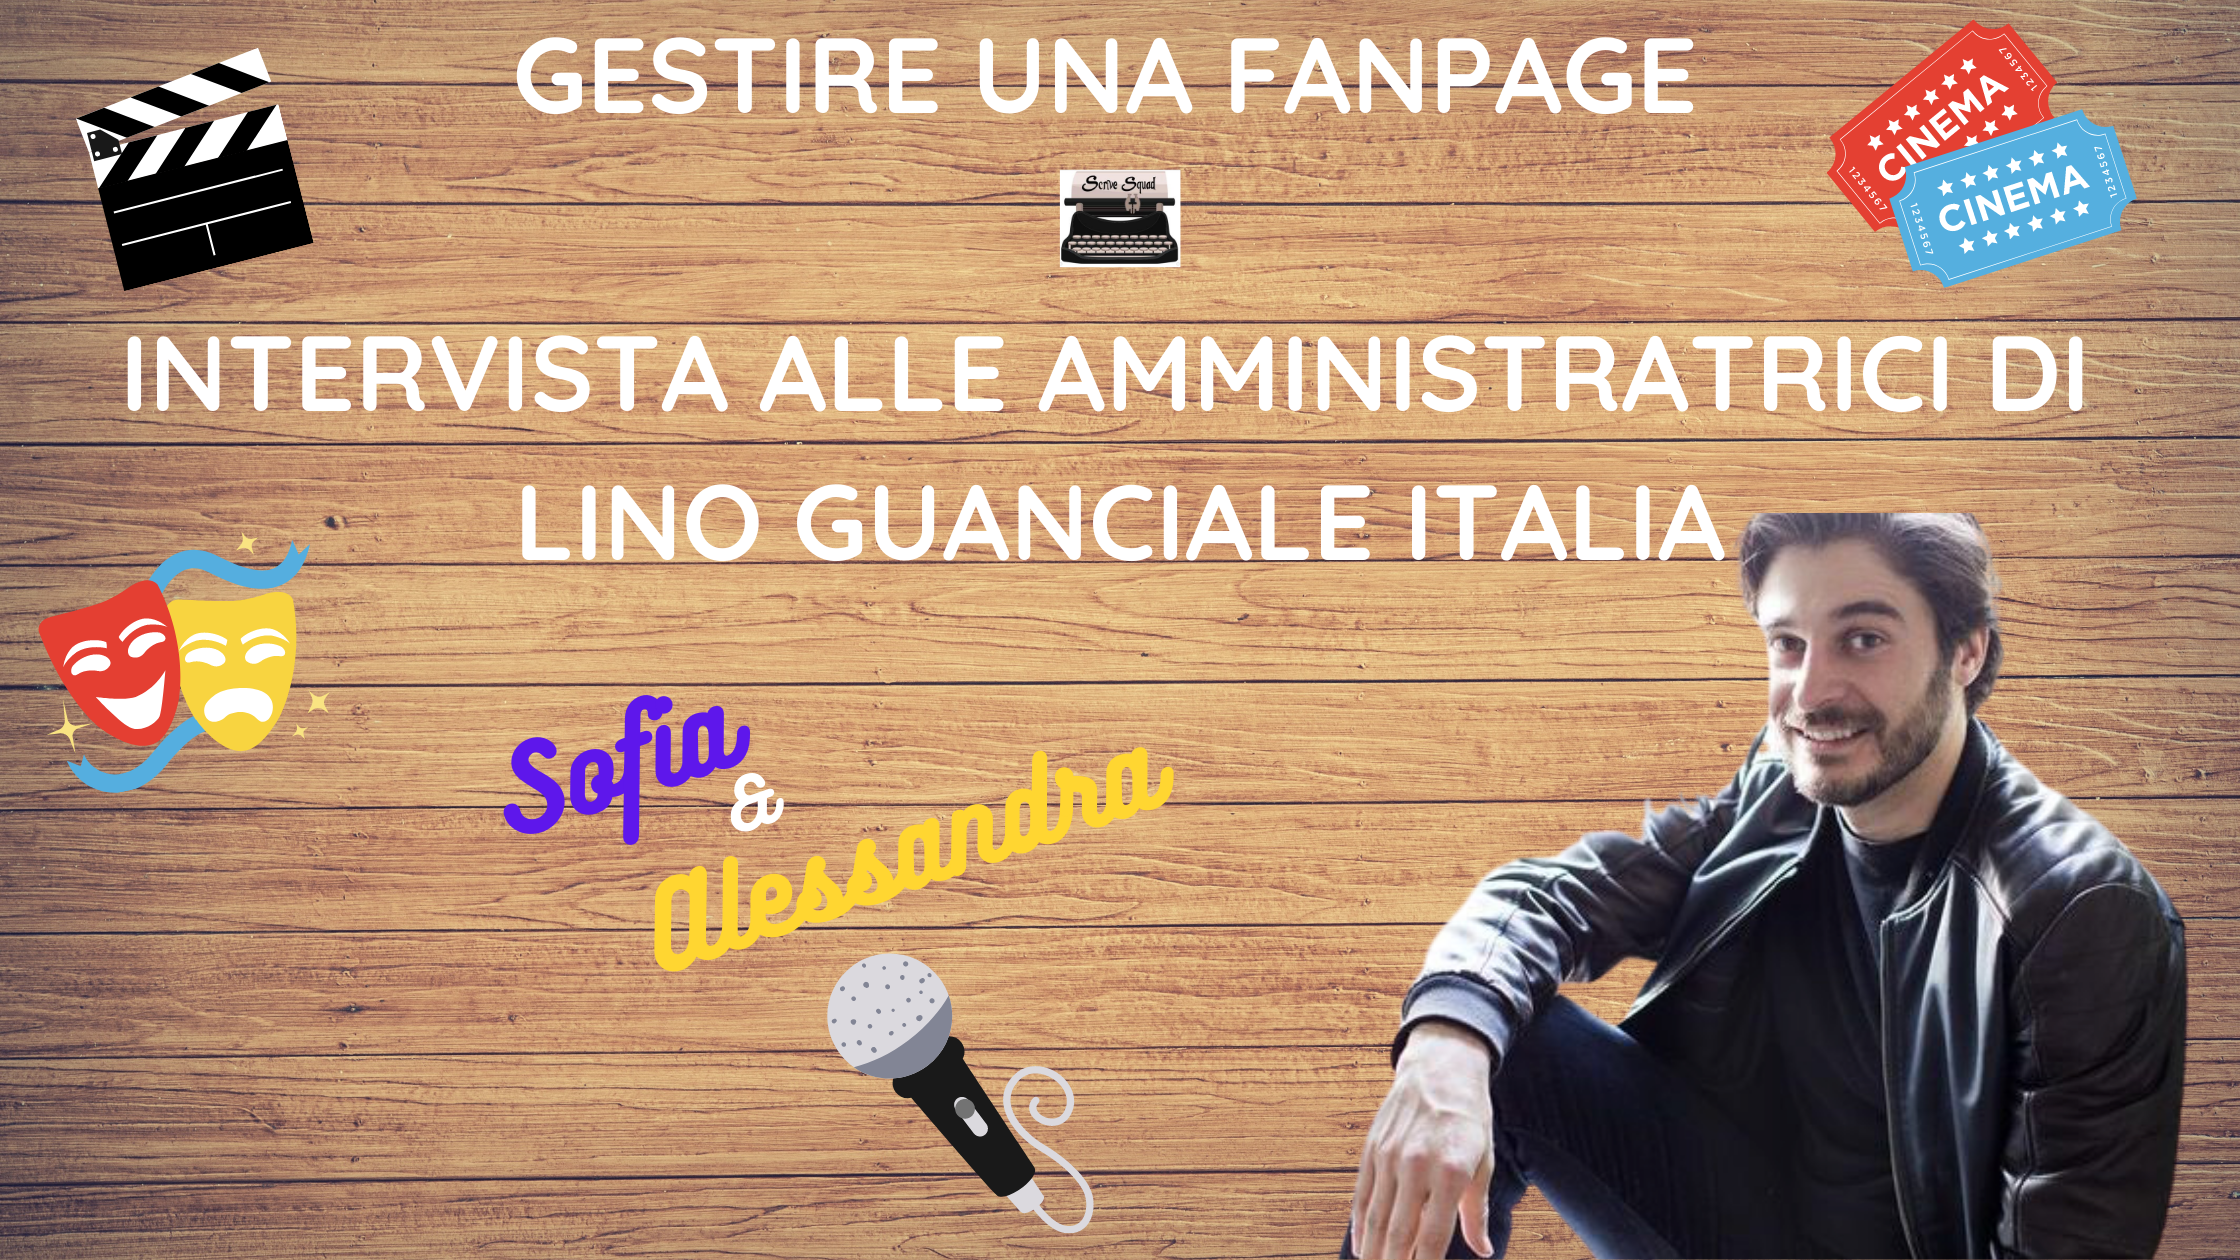 Gestire una fanpage - Intervista alle amministratrici di Lino Guanciale Italia